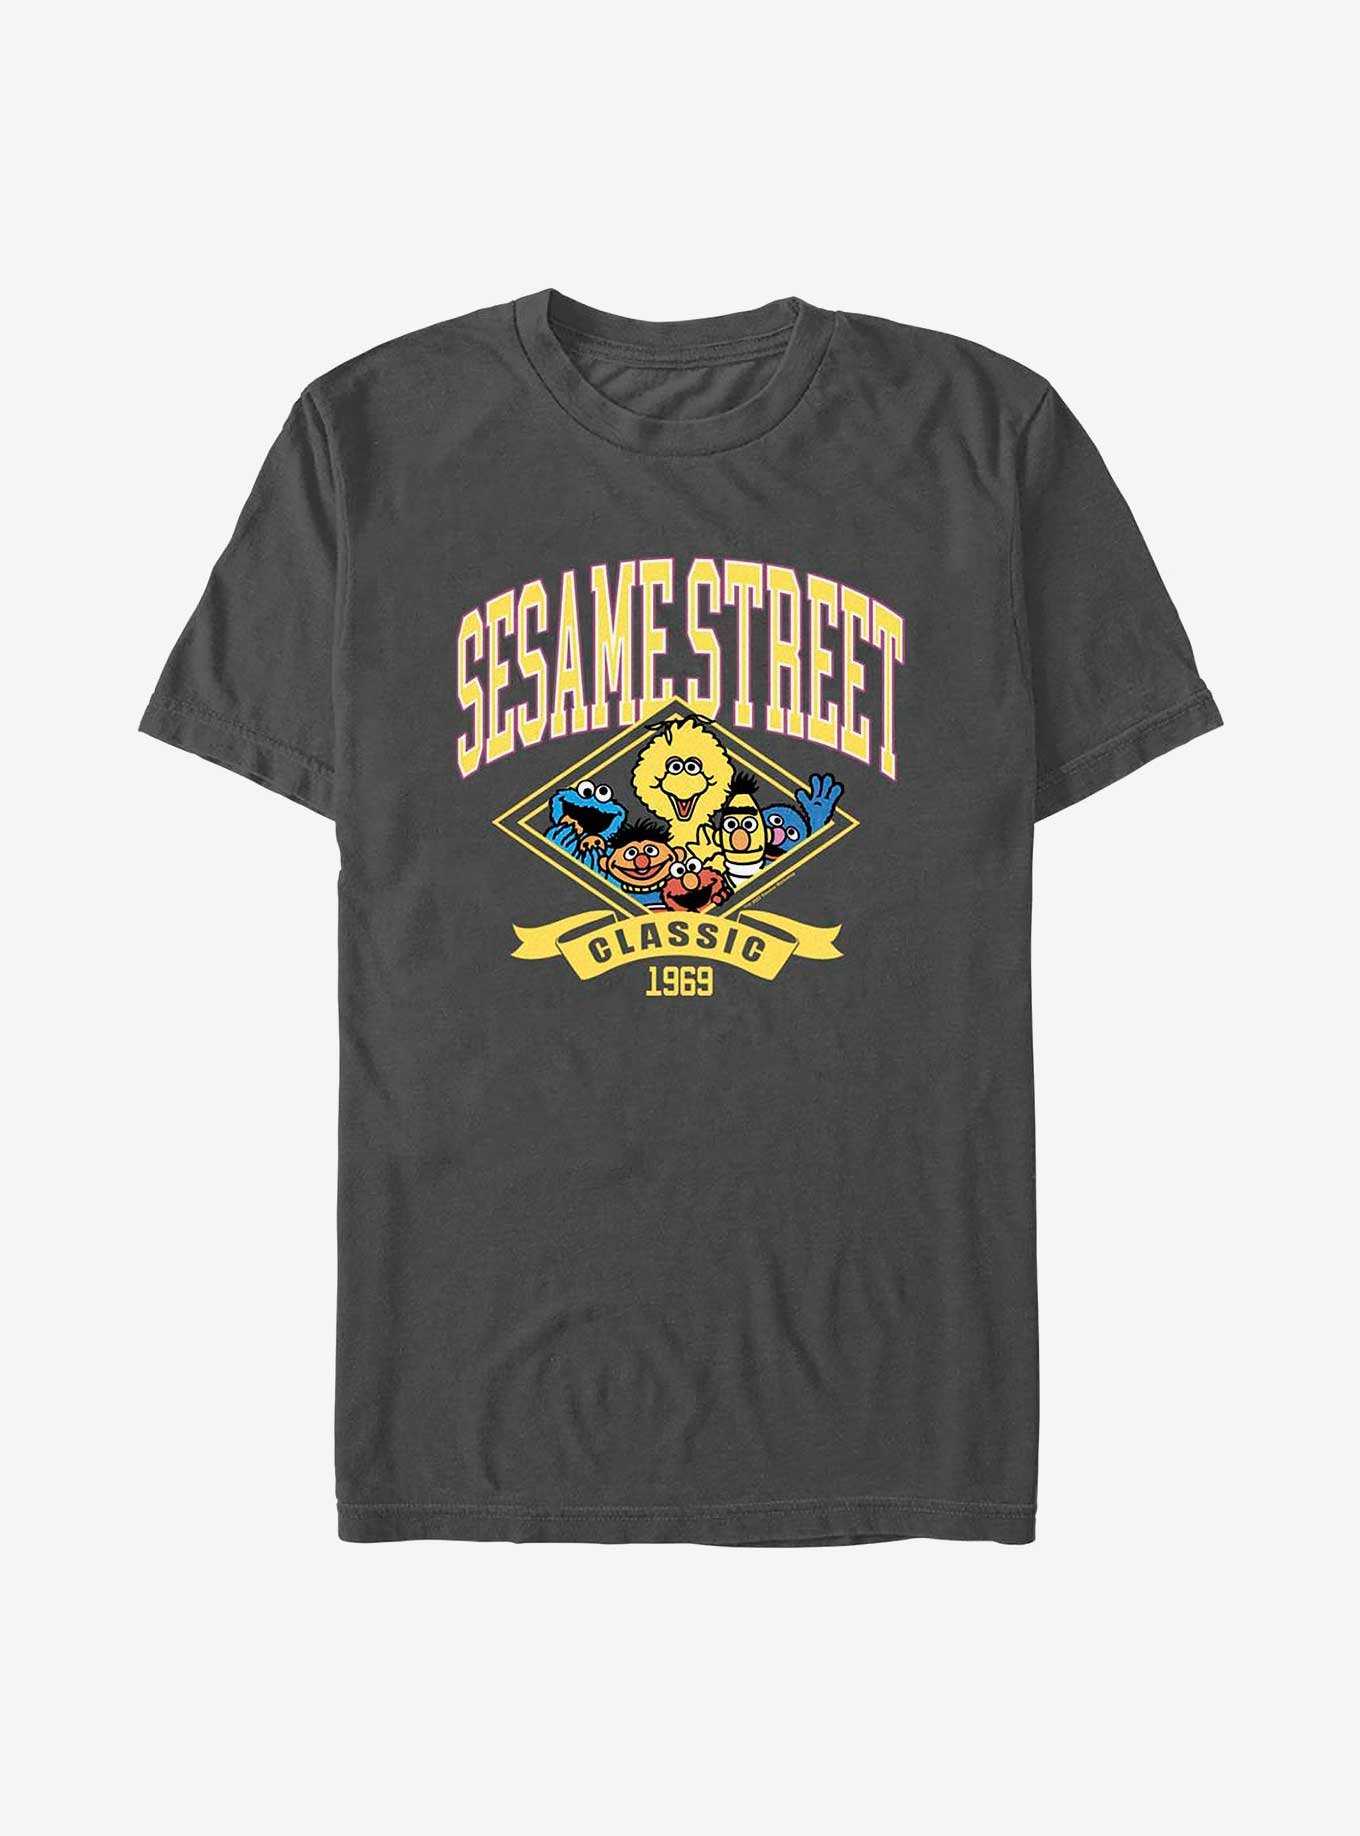 Sesame Street Classic 1969 T-Shirt, , hi-res